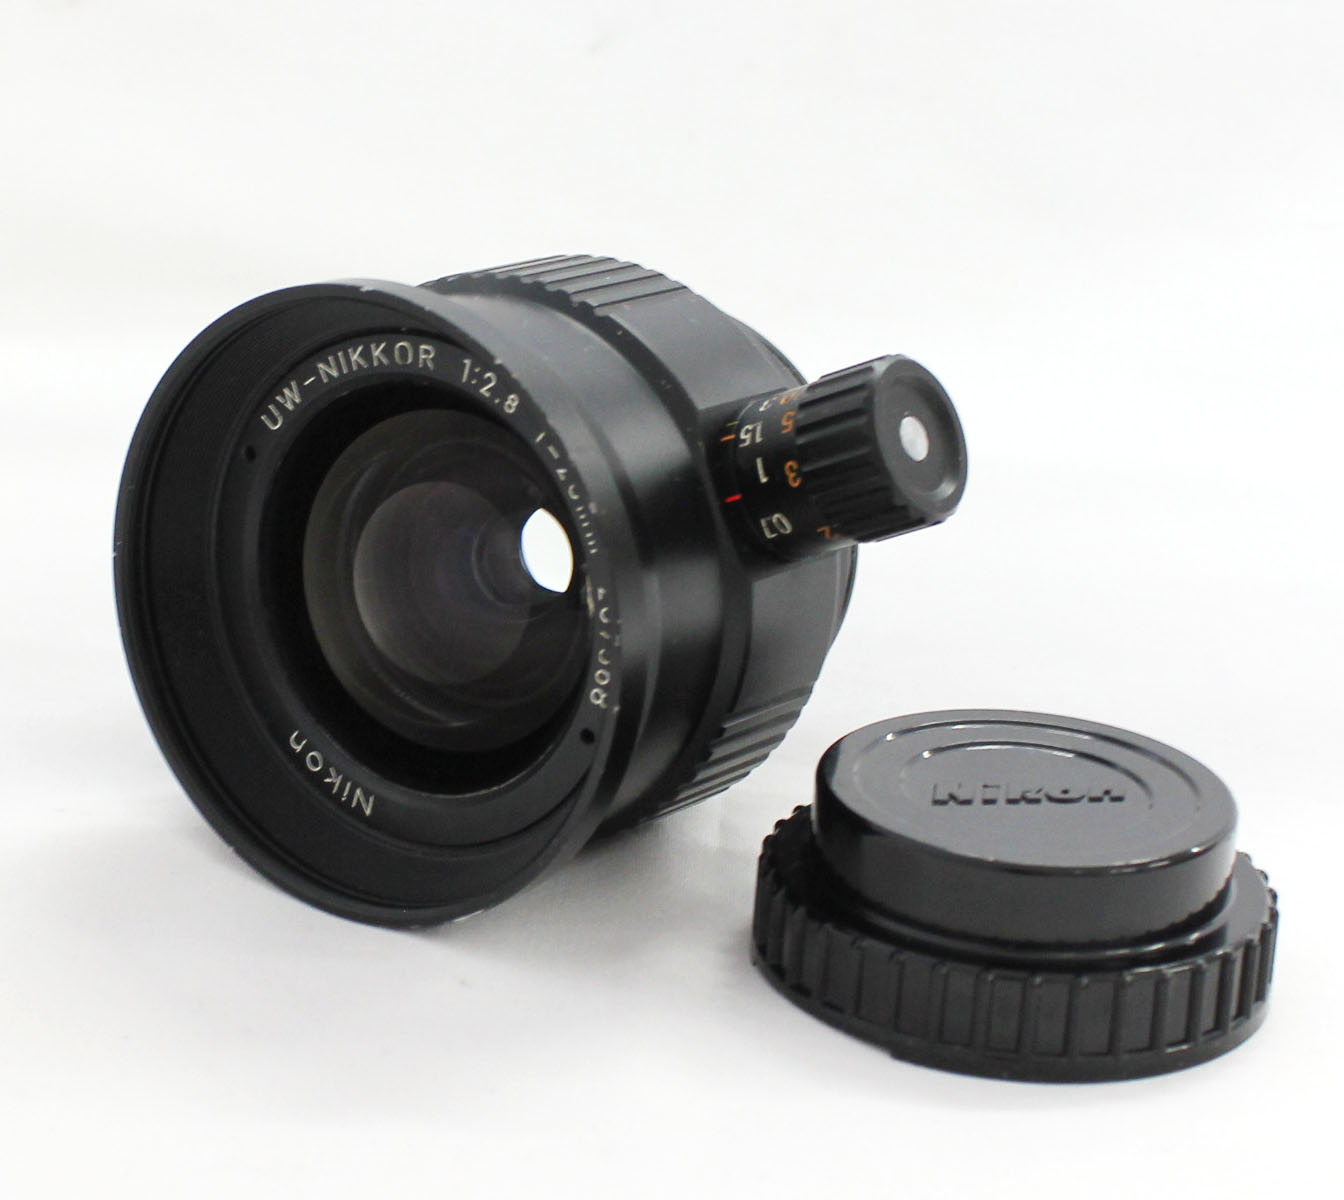 Japan Used Camera Shop | [Excellent++++] Nikon UW-Nikkor 20mm F/2.8 Underwater Lens for Nikonos from Japan